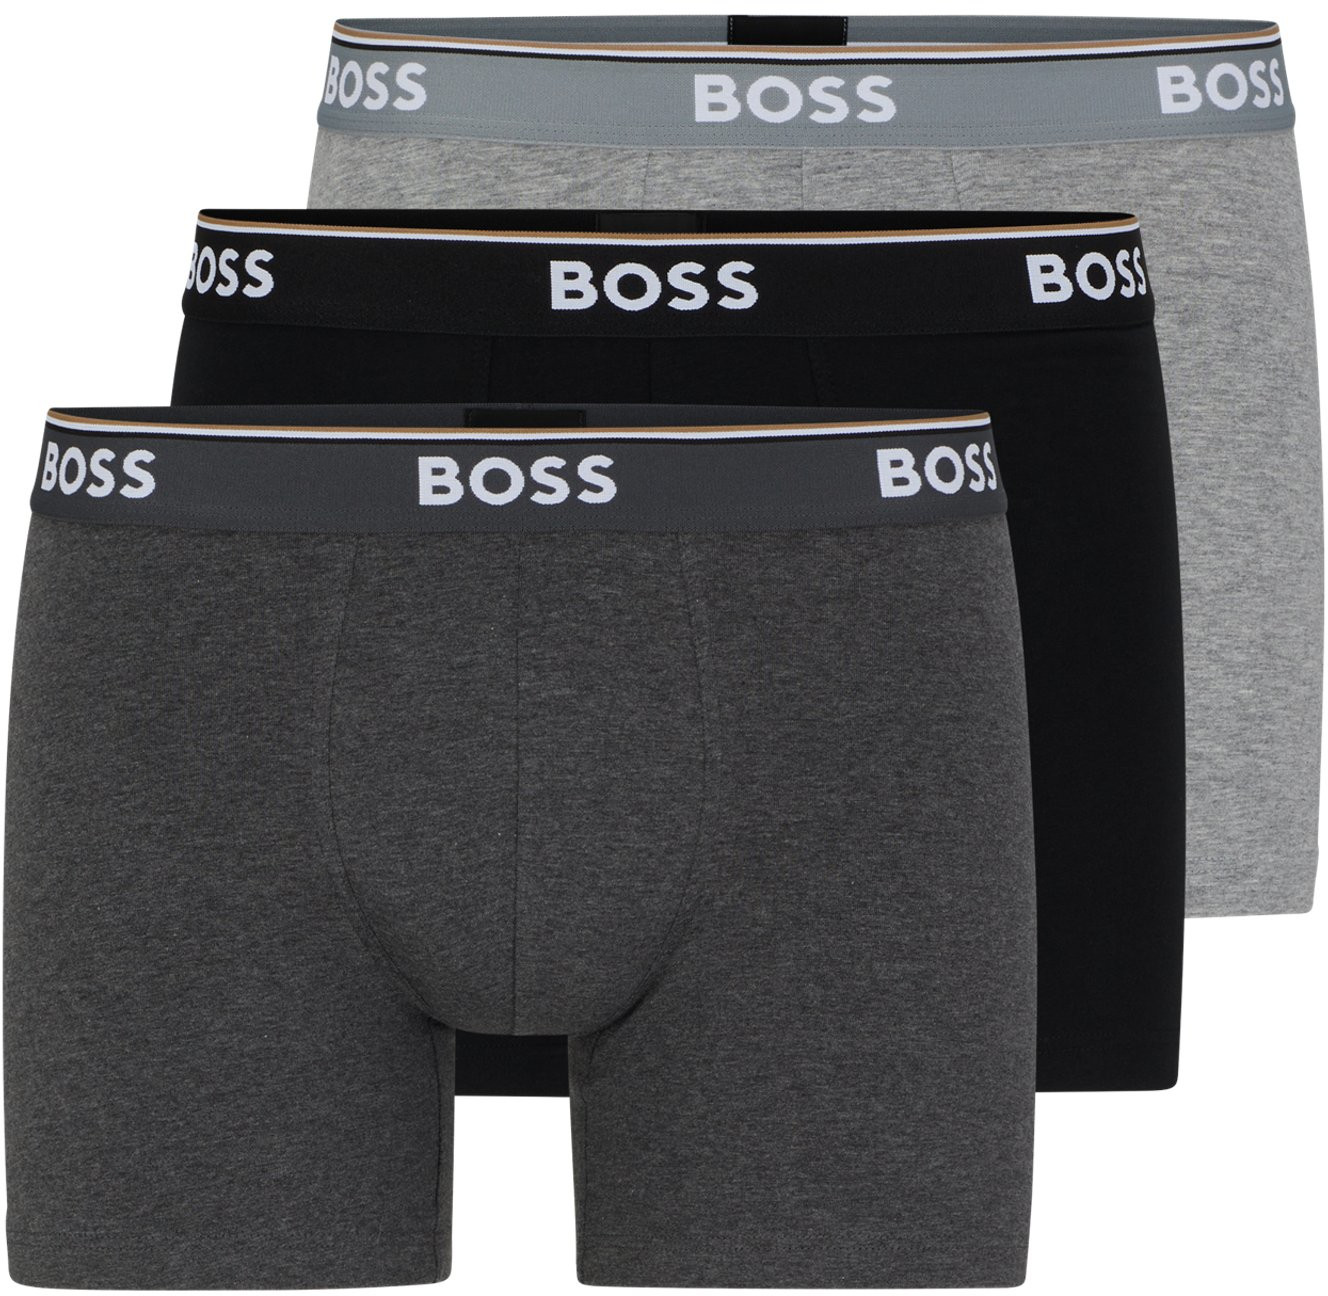 Hugo Boss 3 PACK - pánske boxerky BOSS 50475282-061 XL